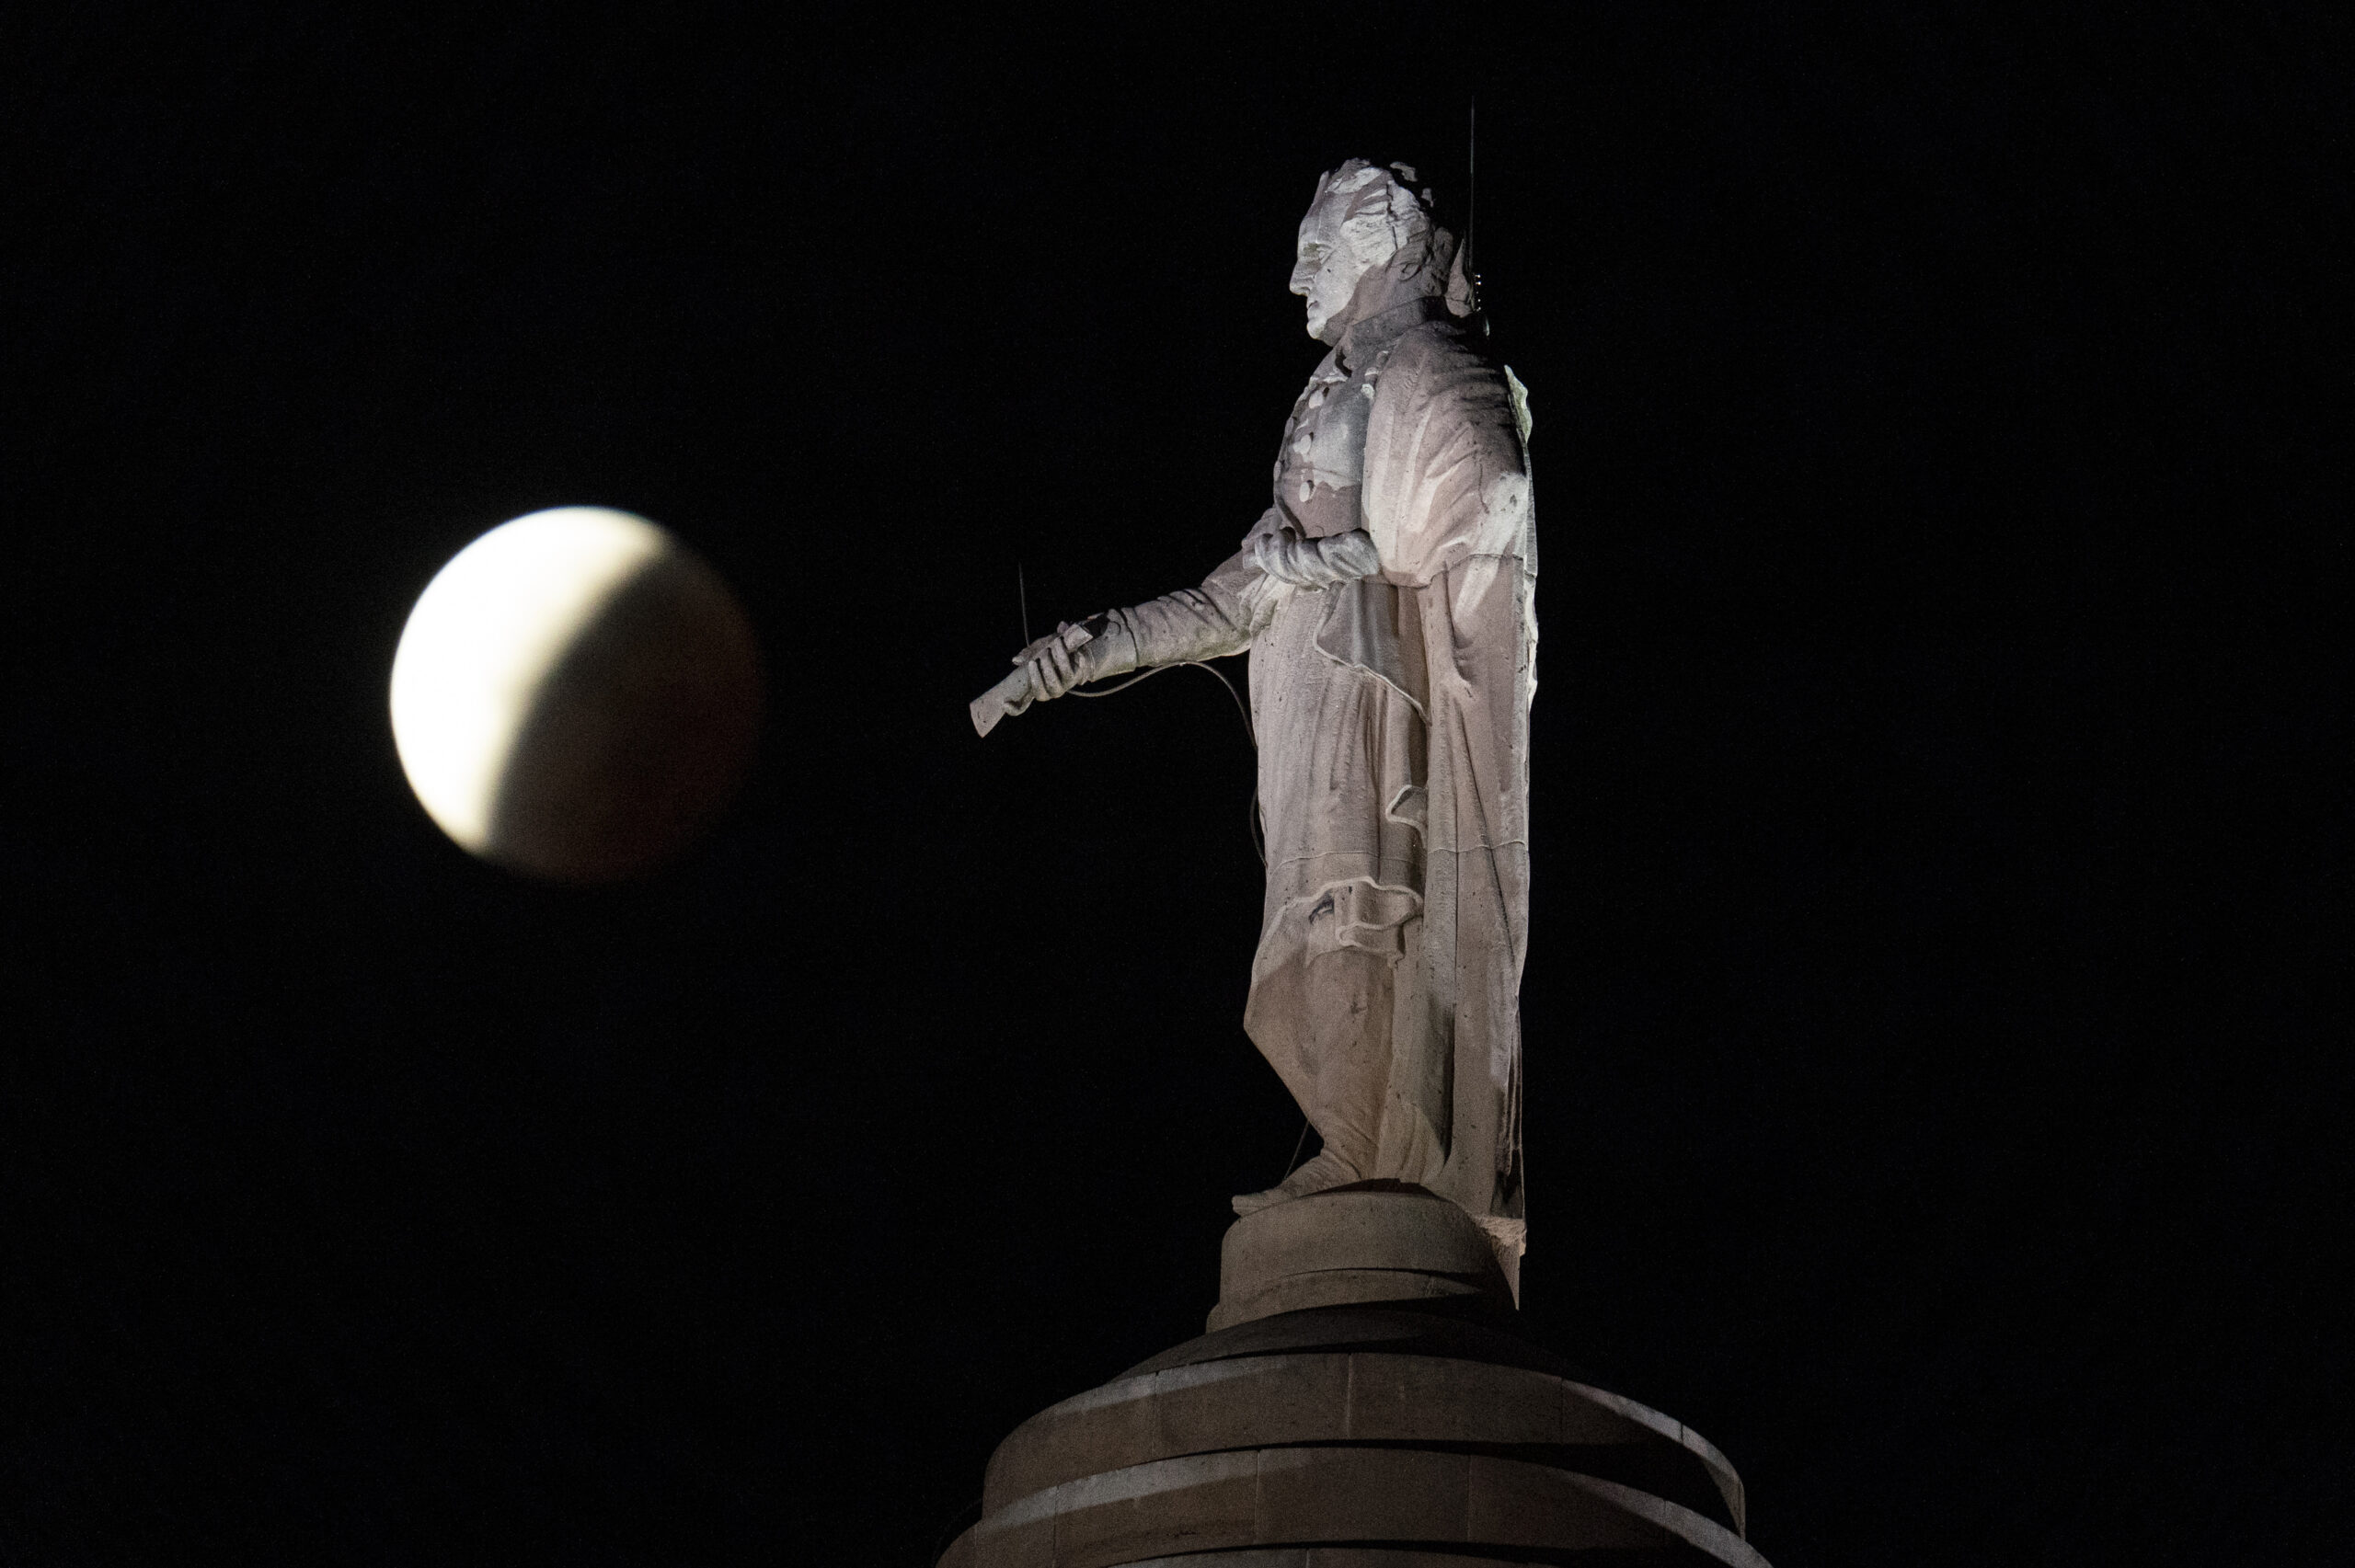 A moon behind a statute.